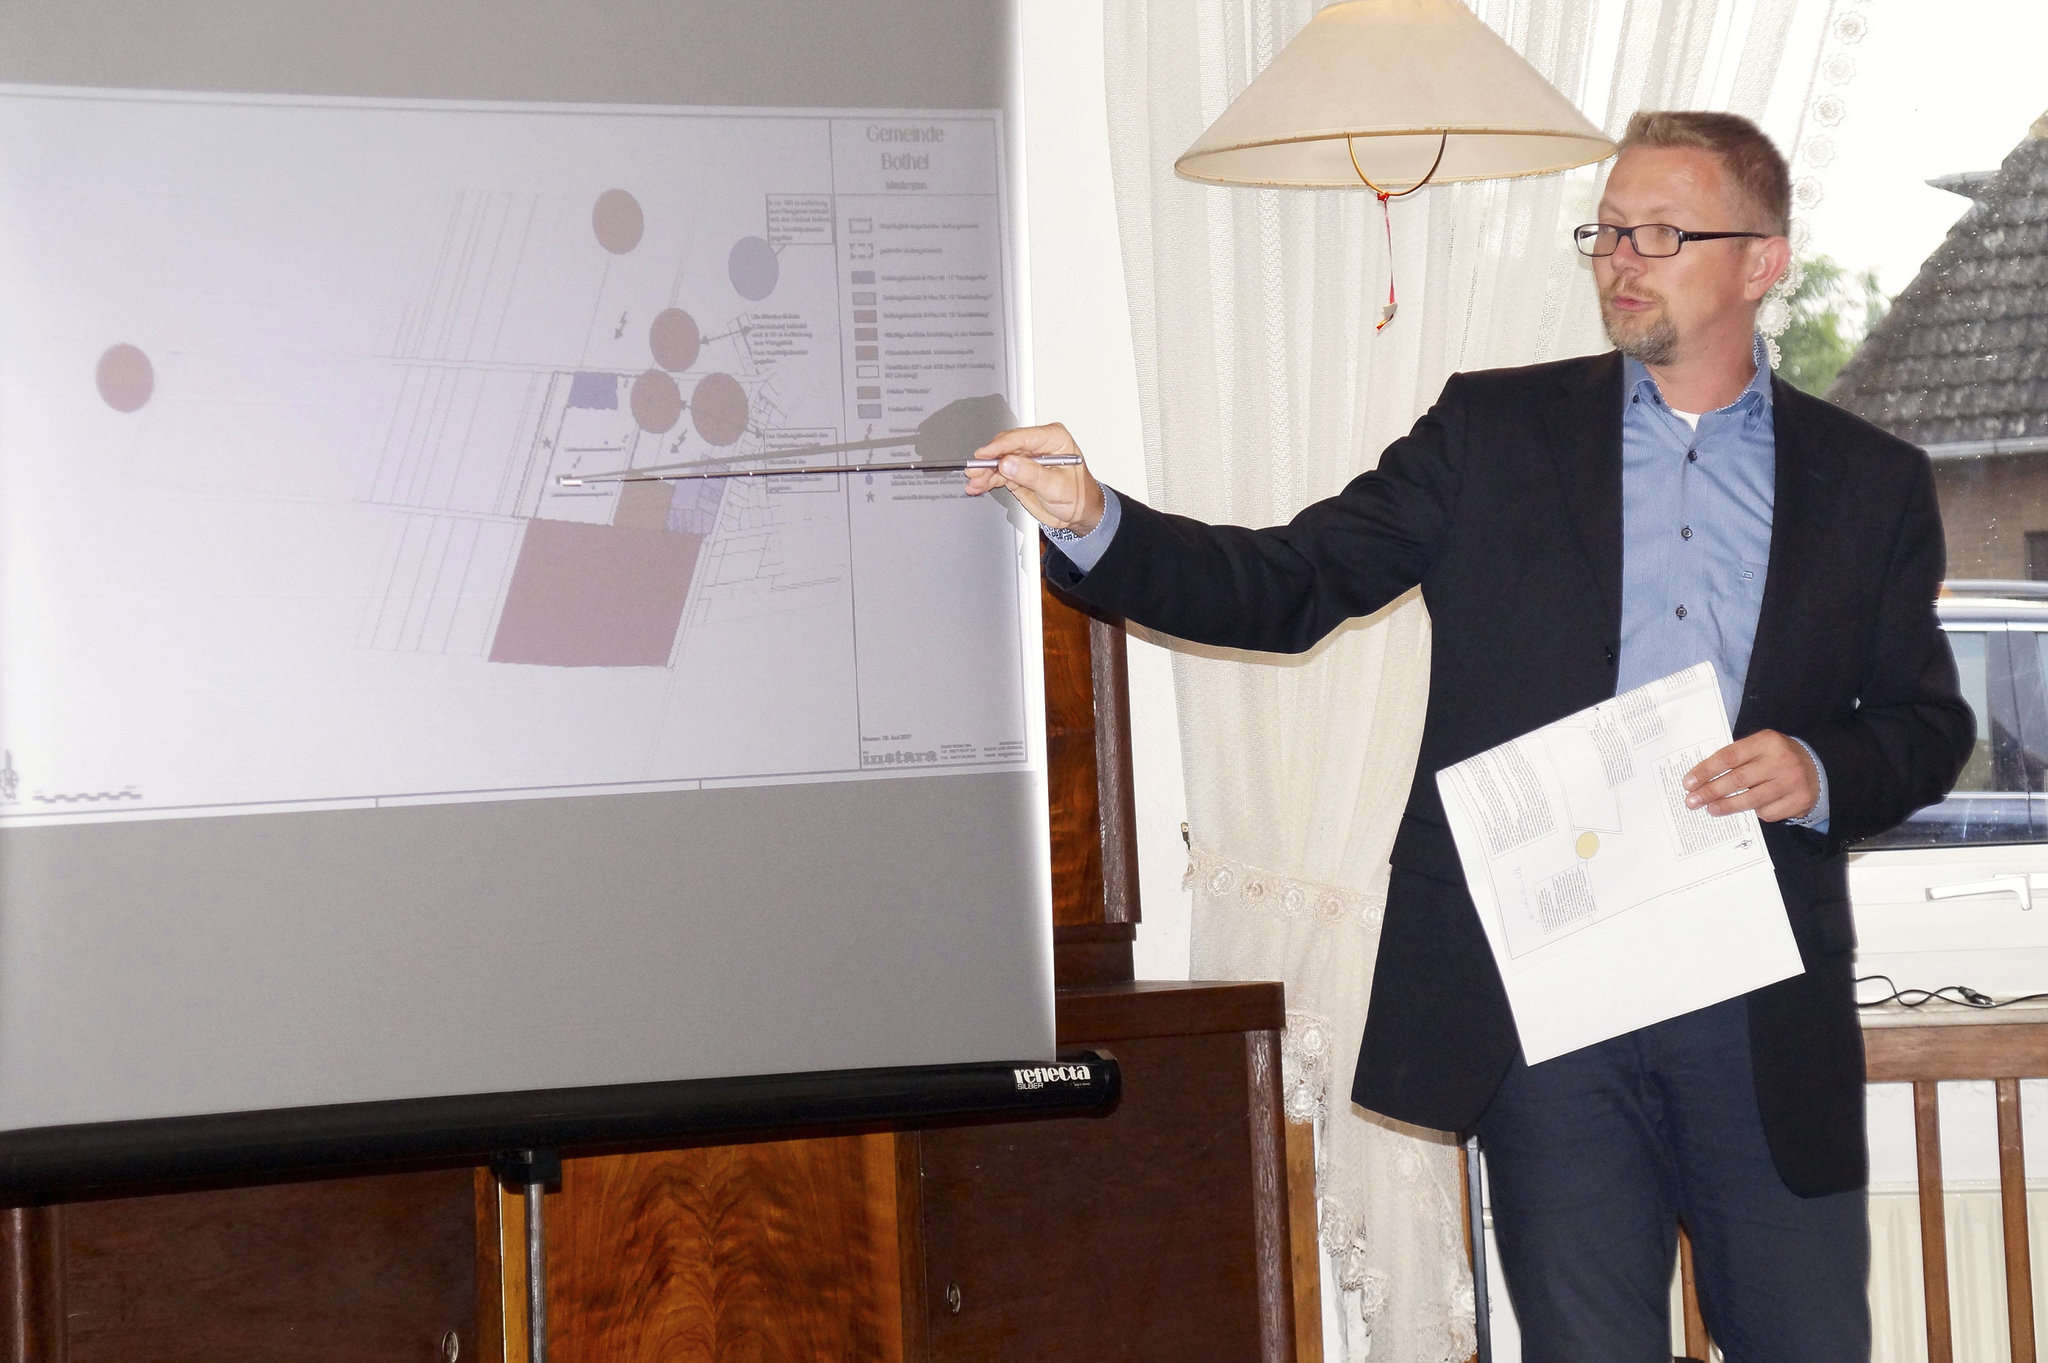 Stadtplaner Burkhard Lichtblau erläutert den Entwurf zur Wohnbebauung Campingplatz 4 in Bothel.